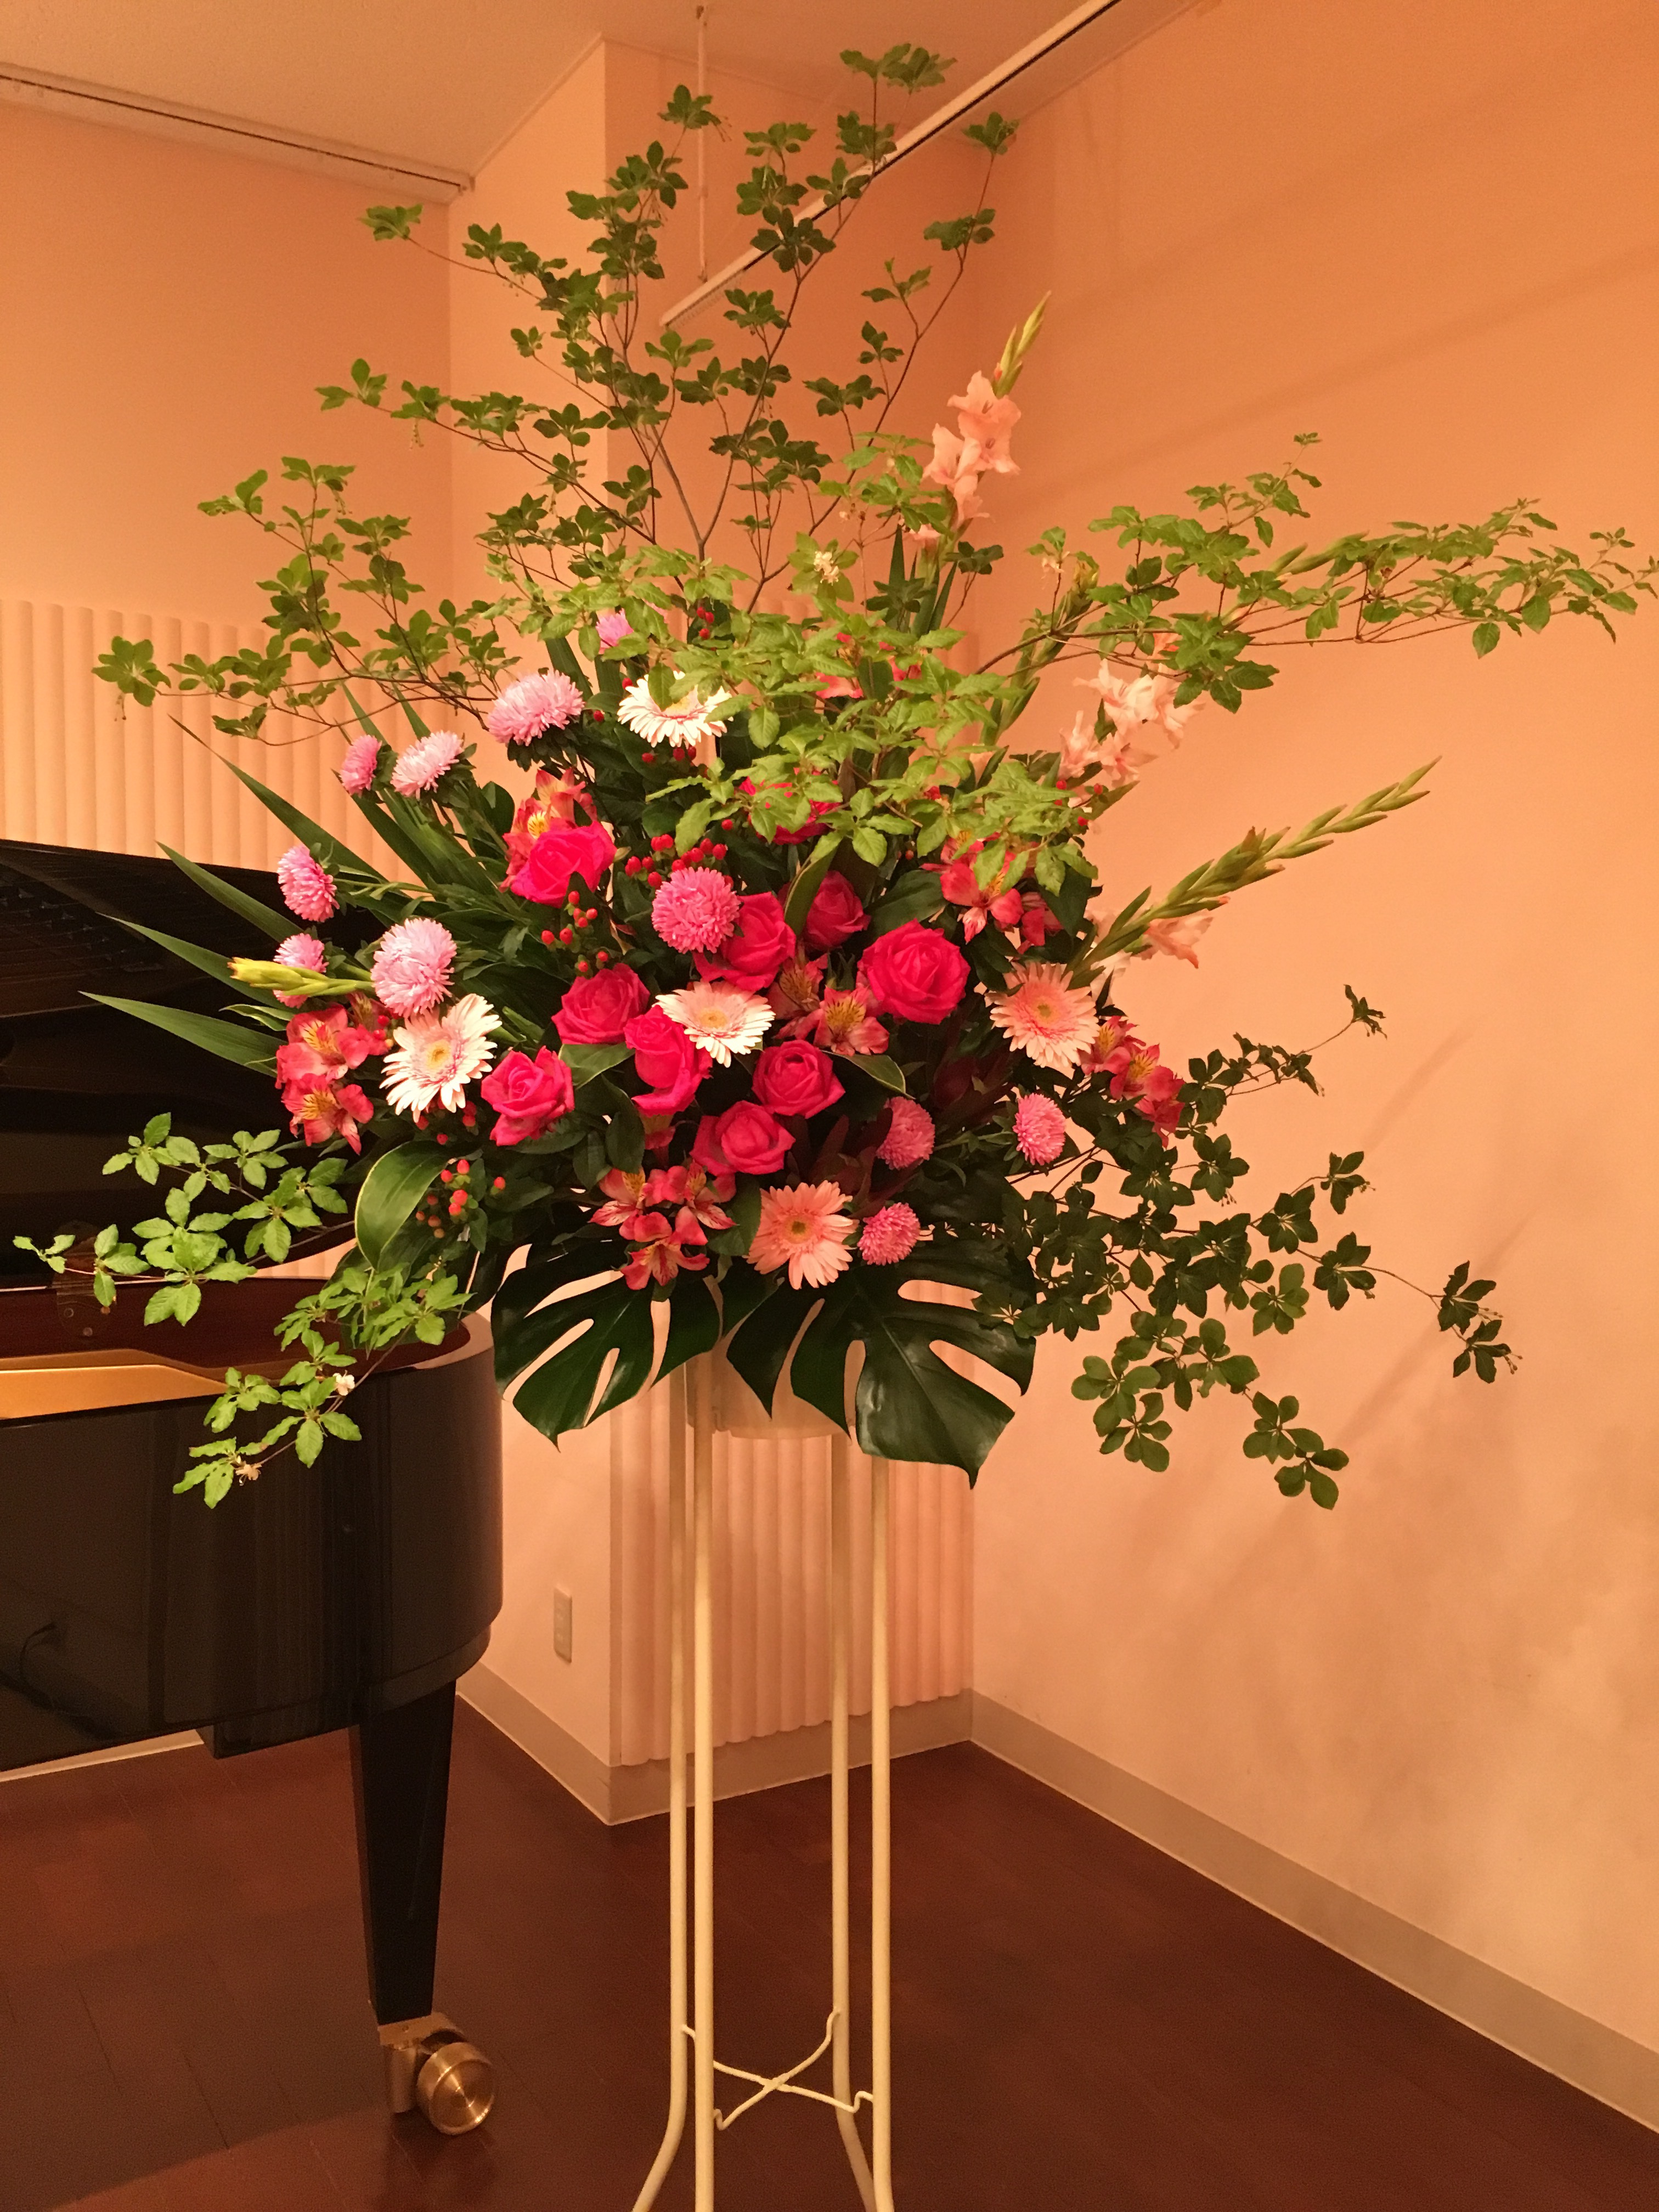 新橋へピアノ発表会へのスタンド花のお届け 阿佐ヶ谷の花屋 Avail アヴェール